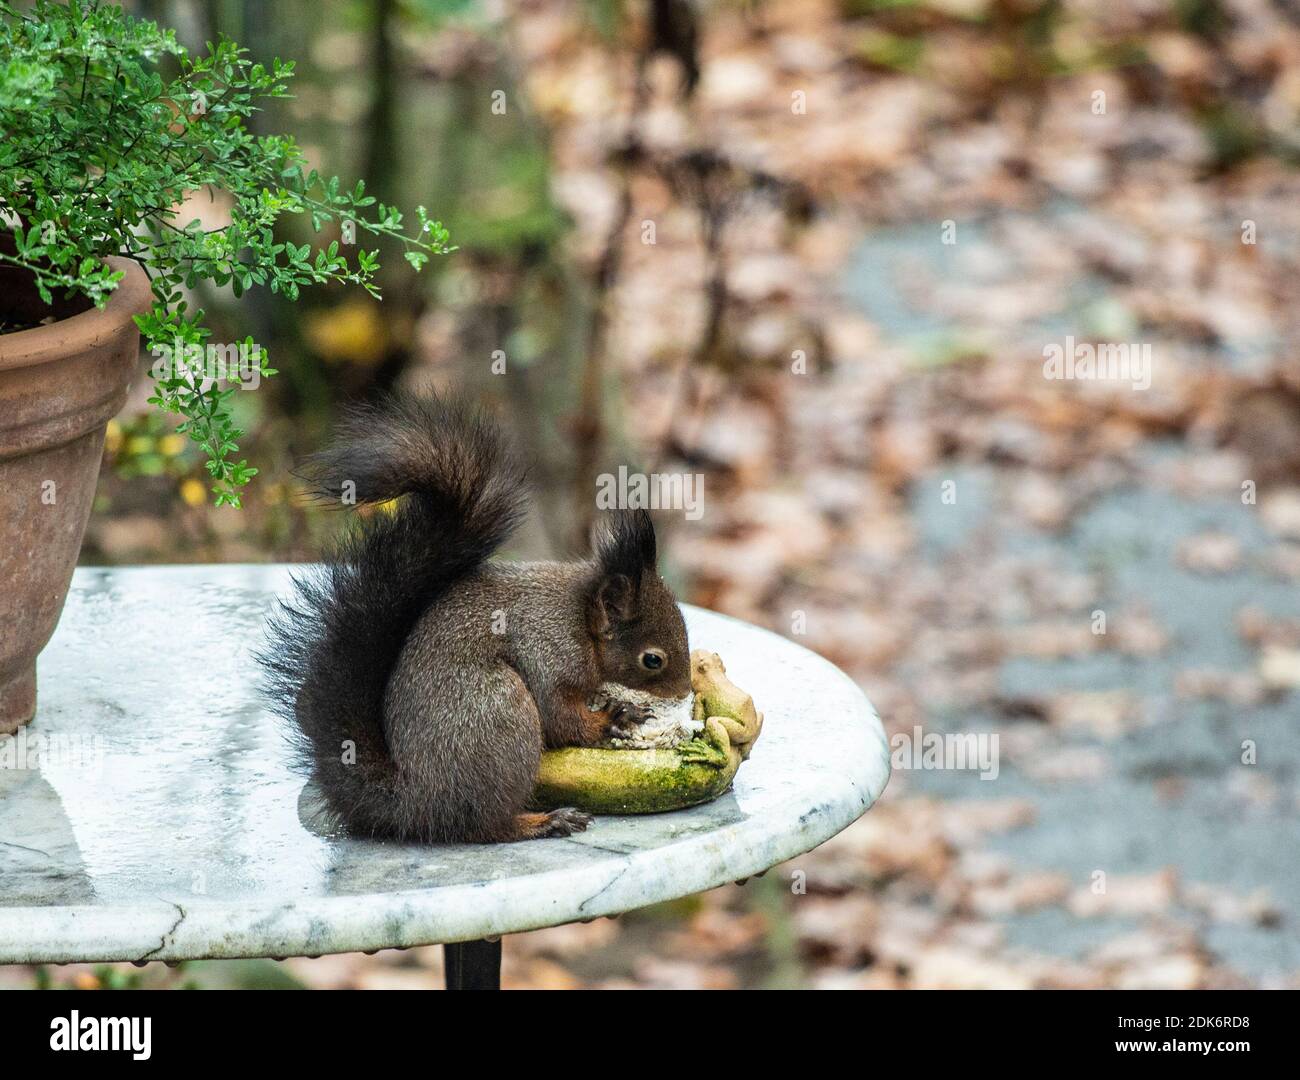 Ein Eichhörnchen knabbert an Nüssen, die als Vogelfutter in einer Gartenschale liegen. Stock Photo